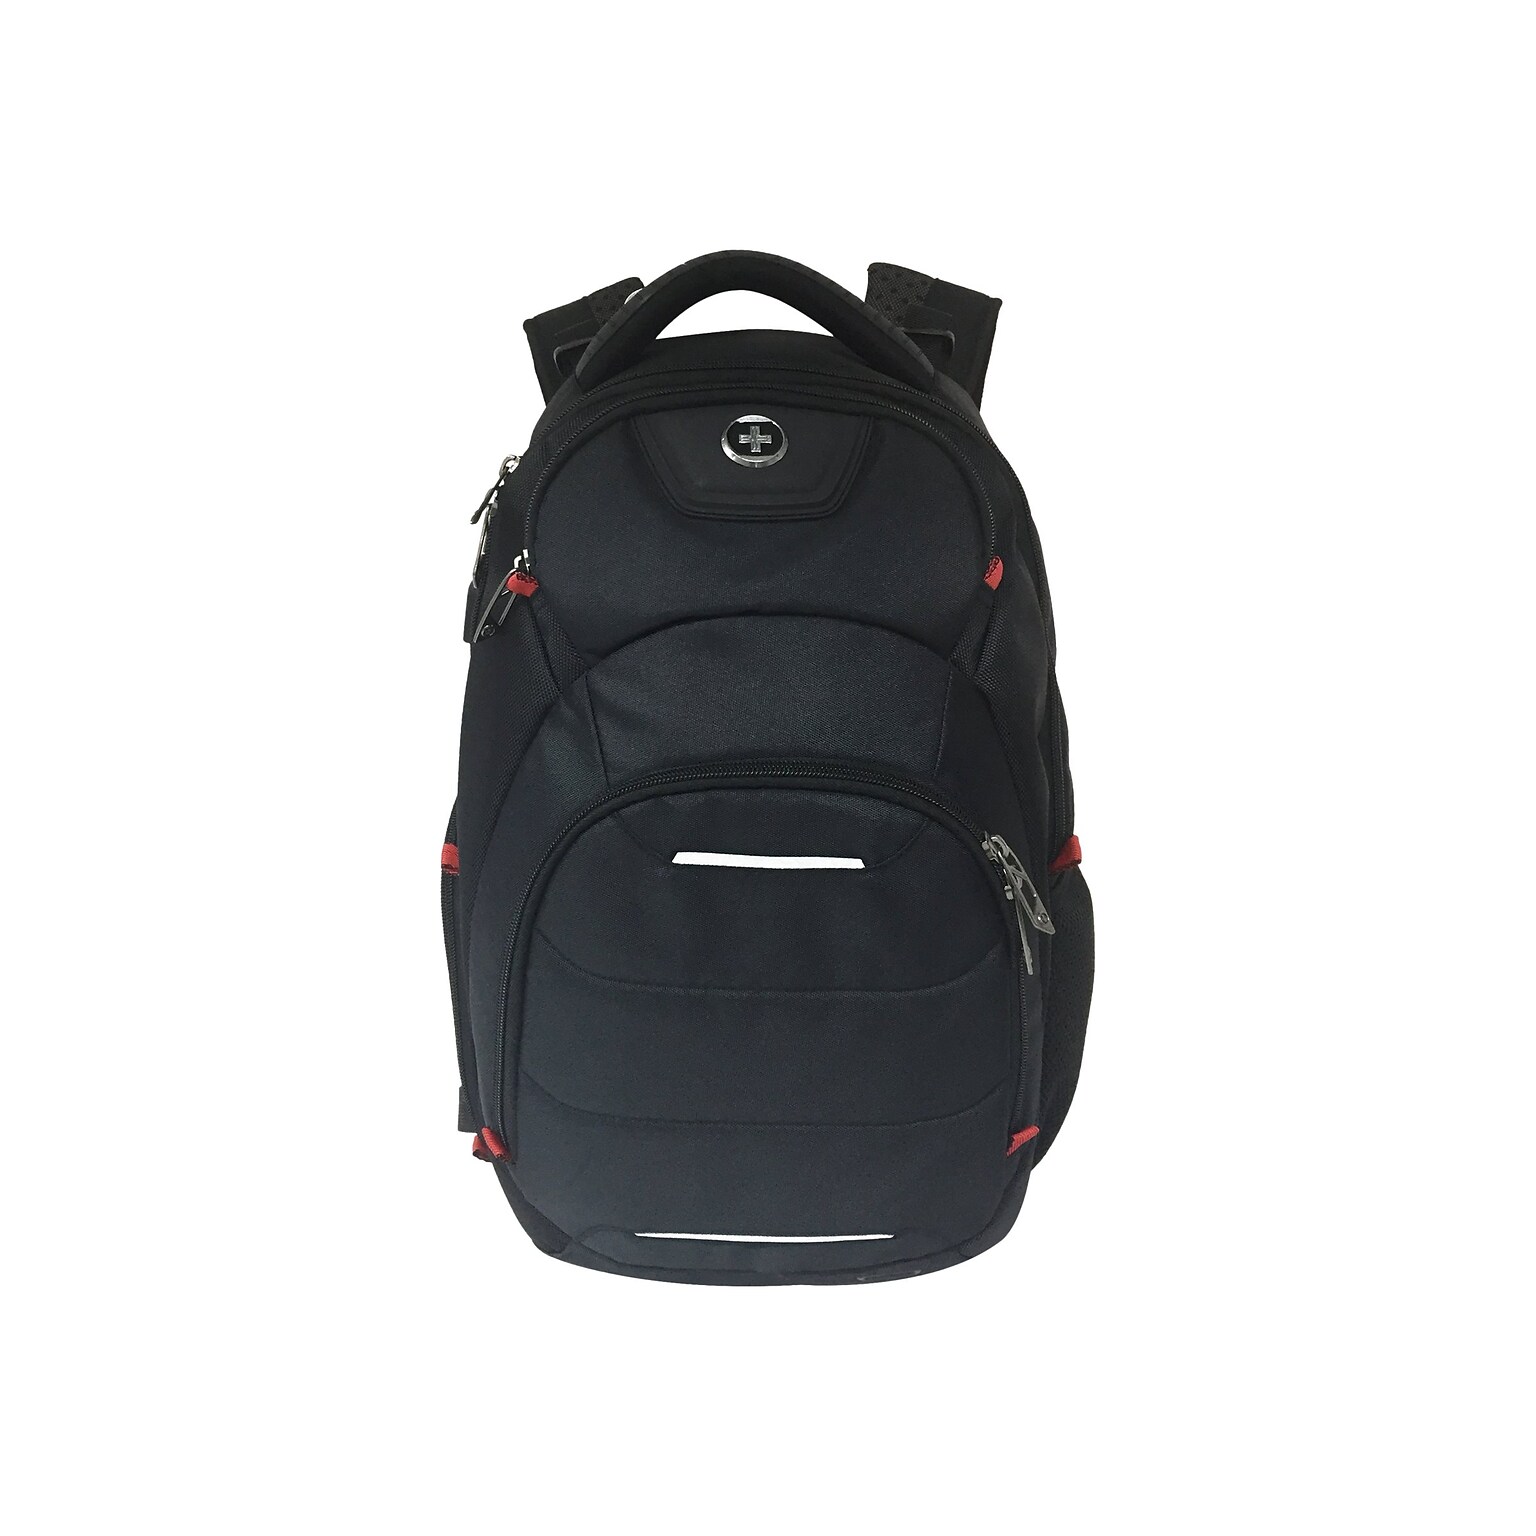 SwissDigital Neptune Massaging Backpack, Black (SD1003M-V1)